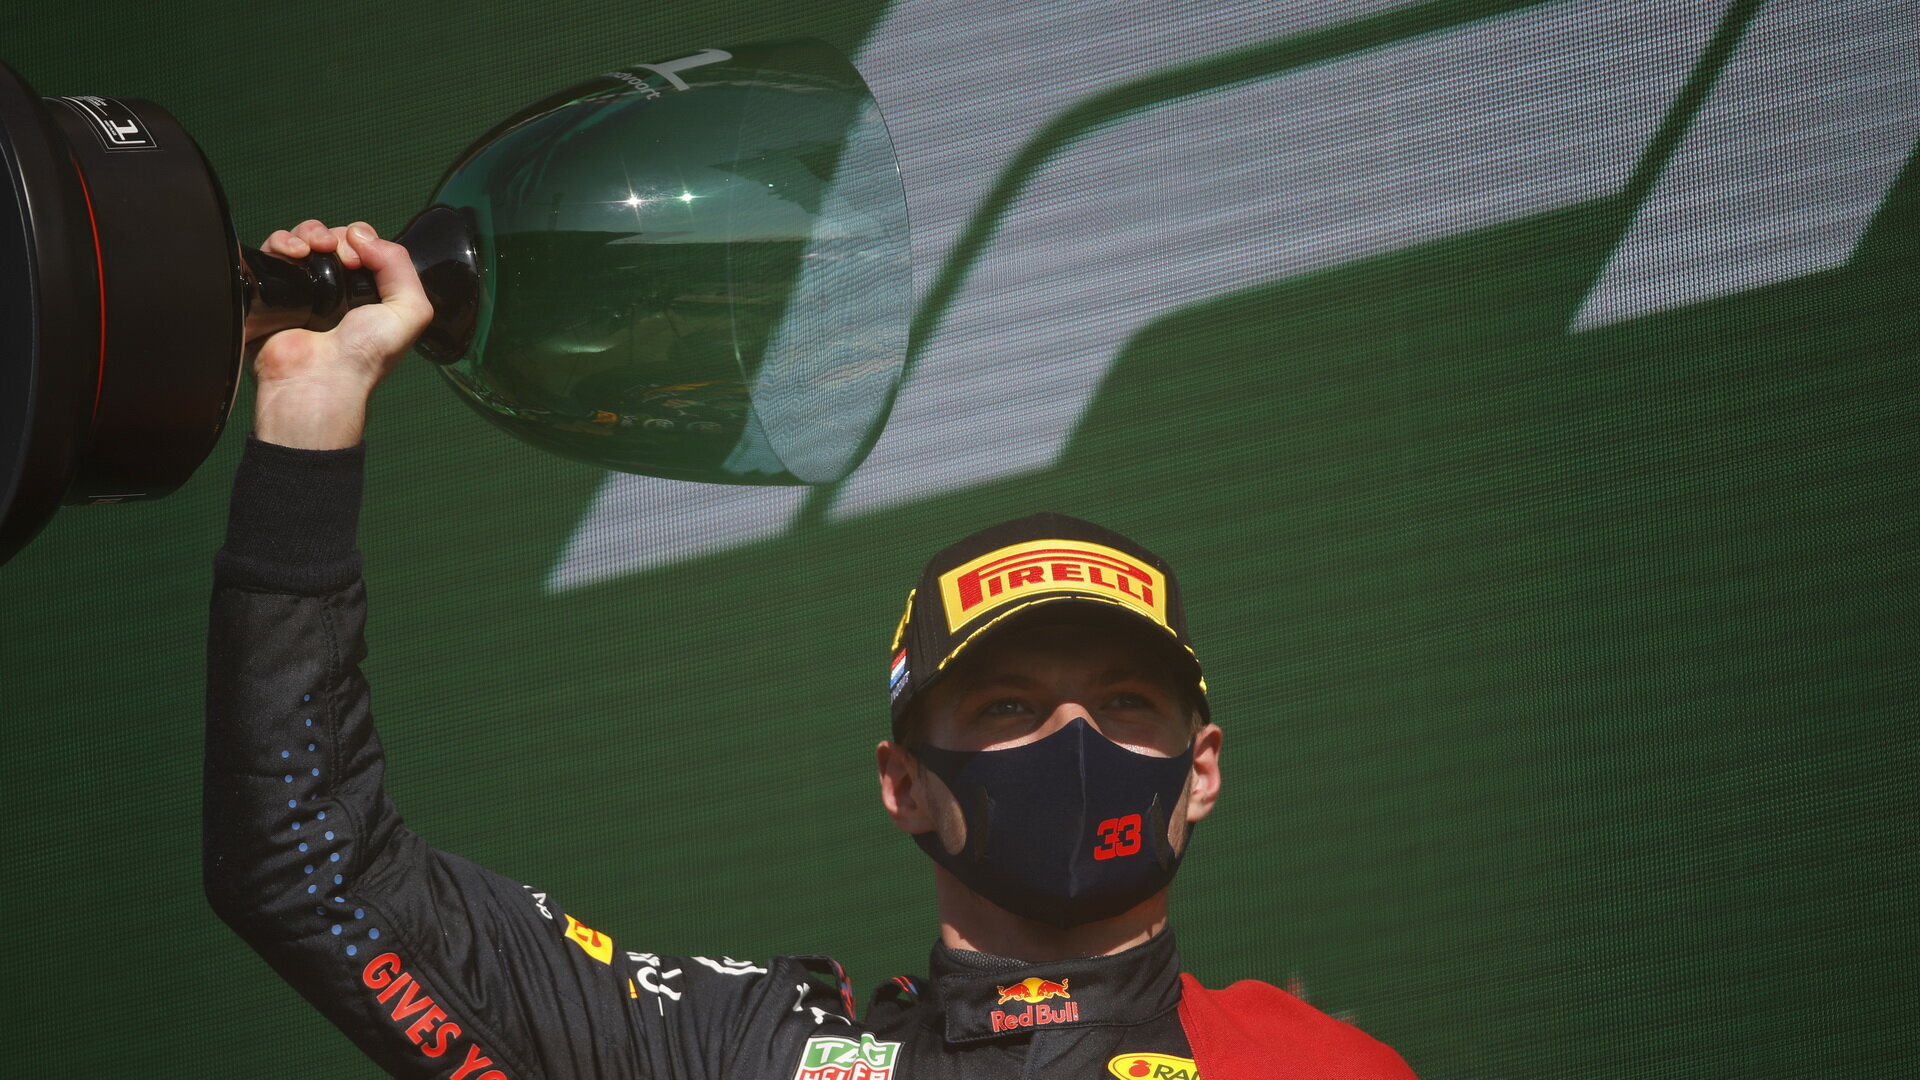 Max Verstappen se svou trofejí za první místo po závodě v Holandsku